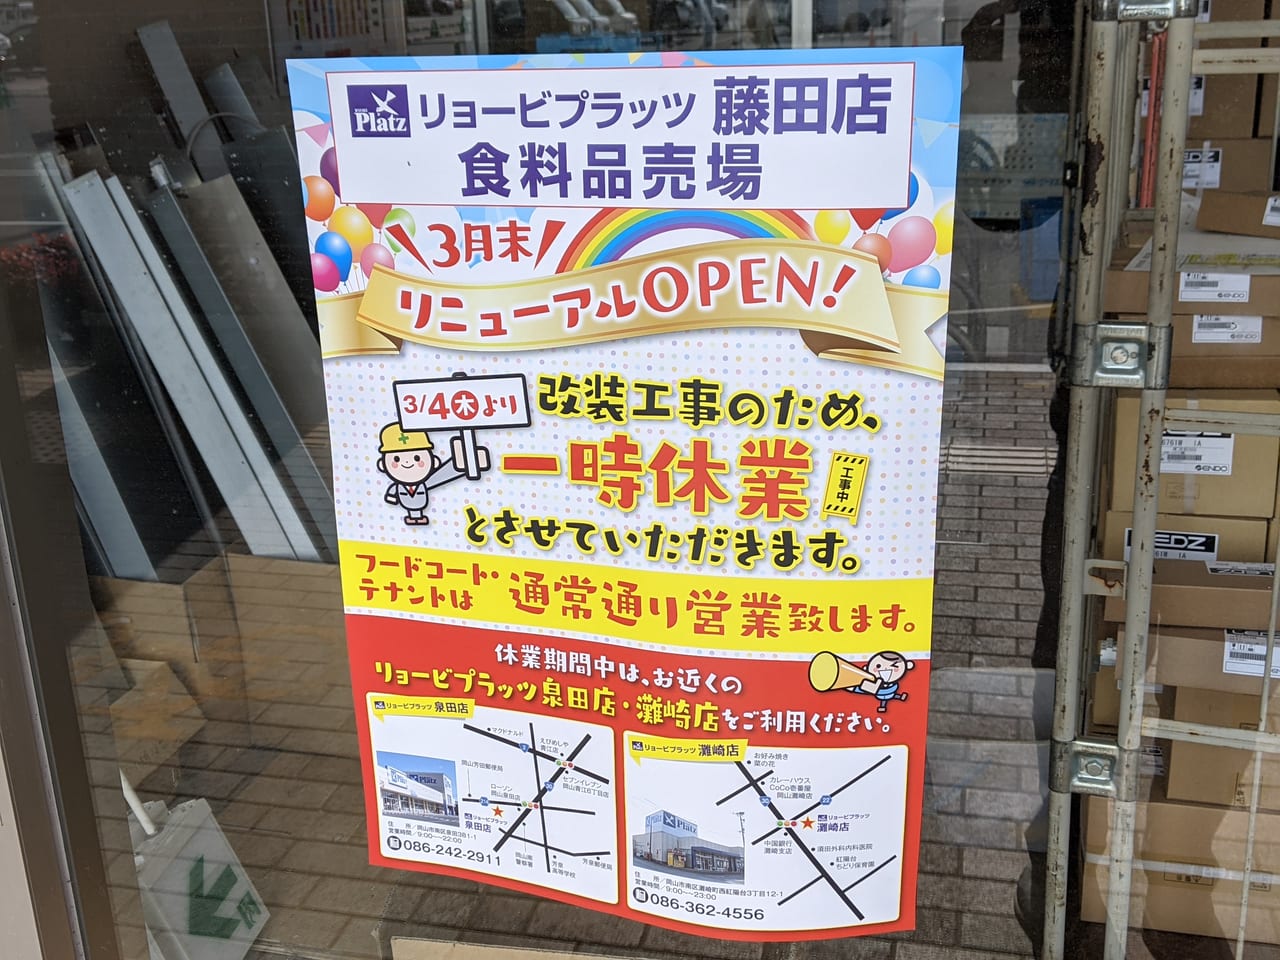 リョービプラッツ藤田店の改装工事のお知らせ